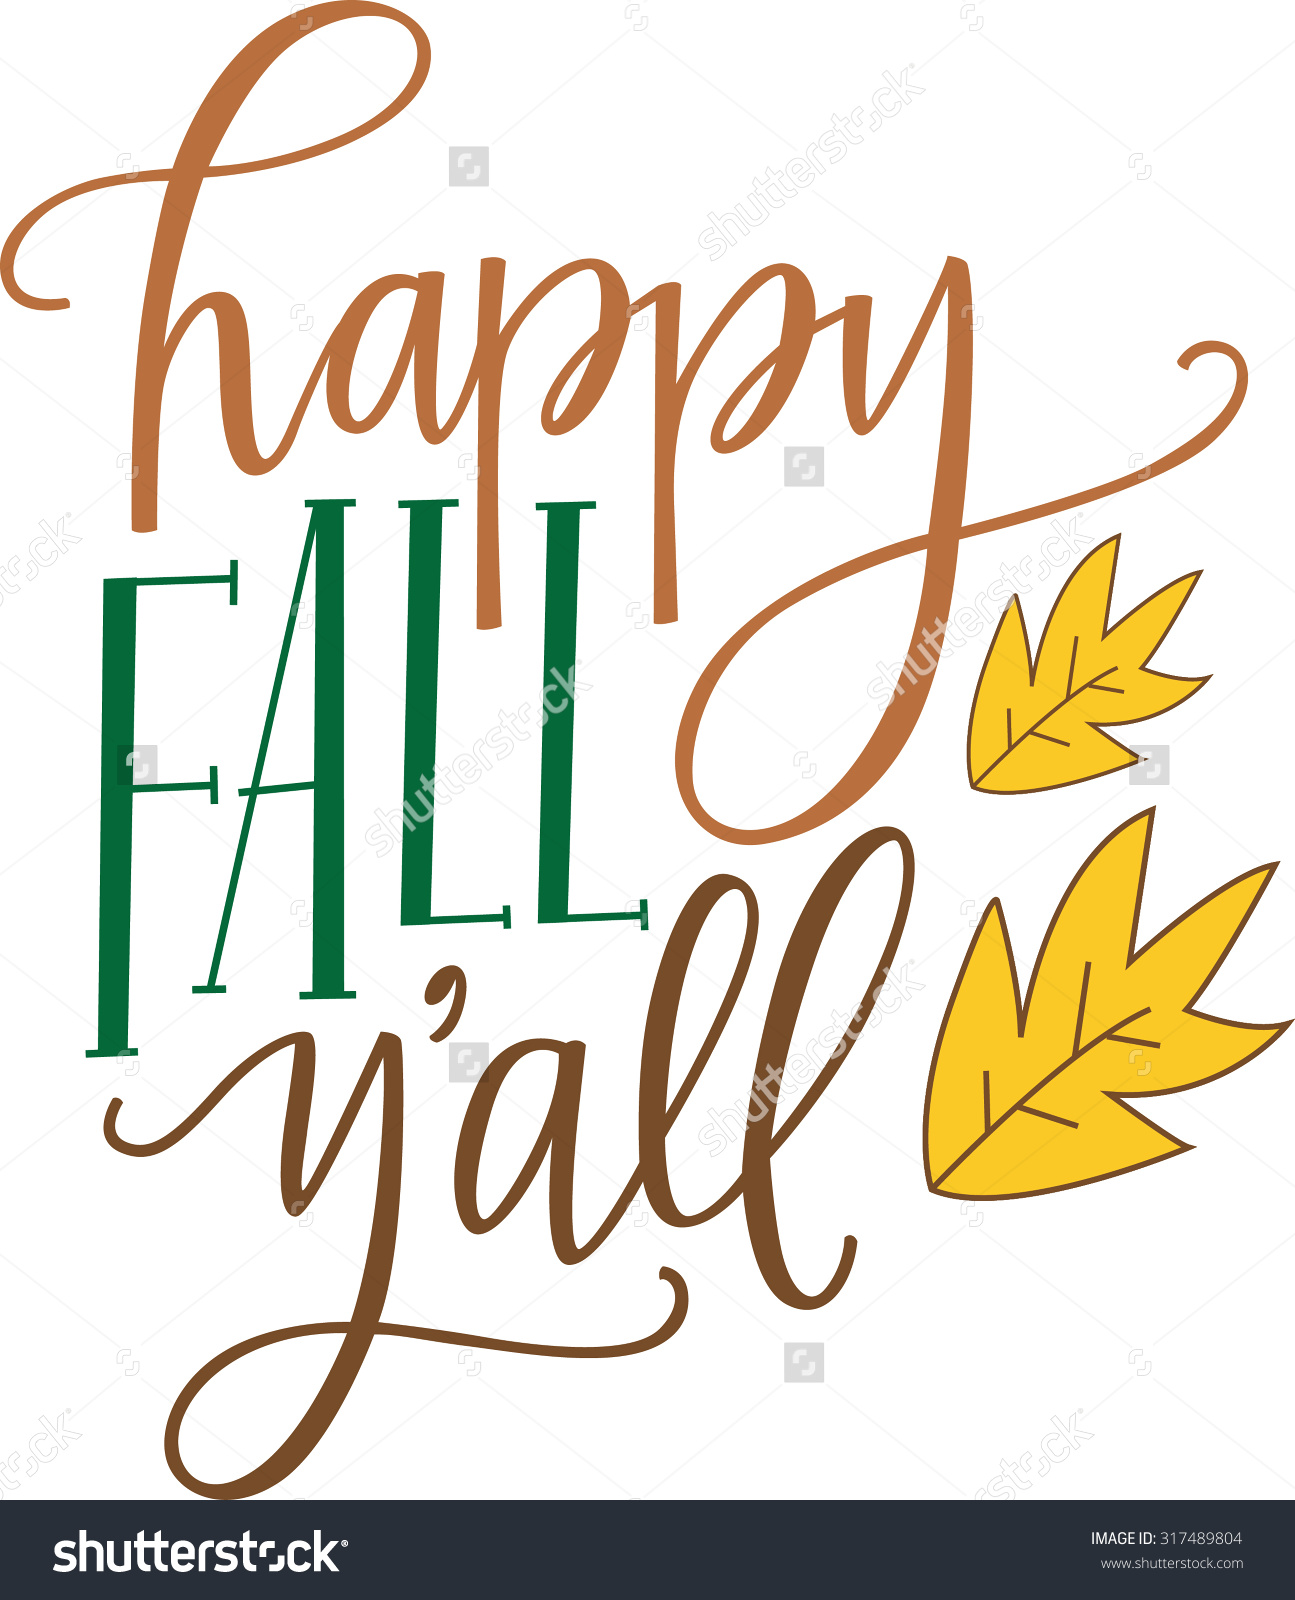 Happy Fall Y